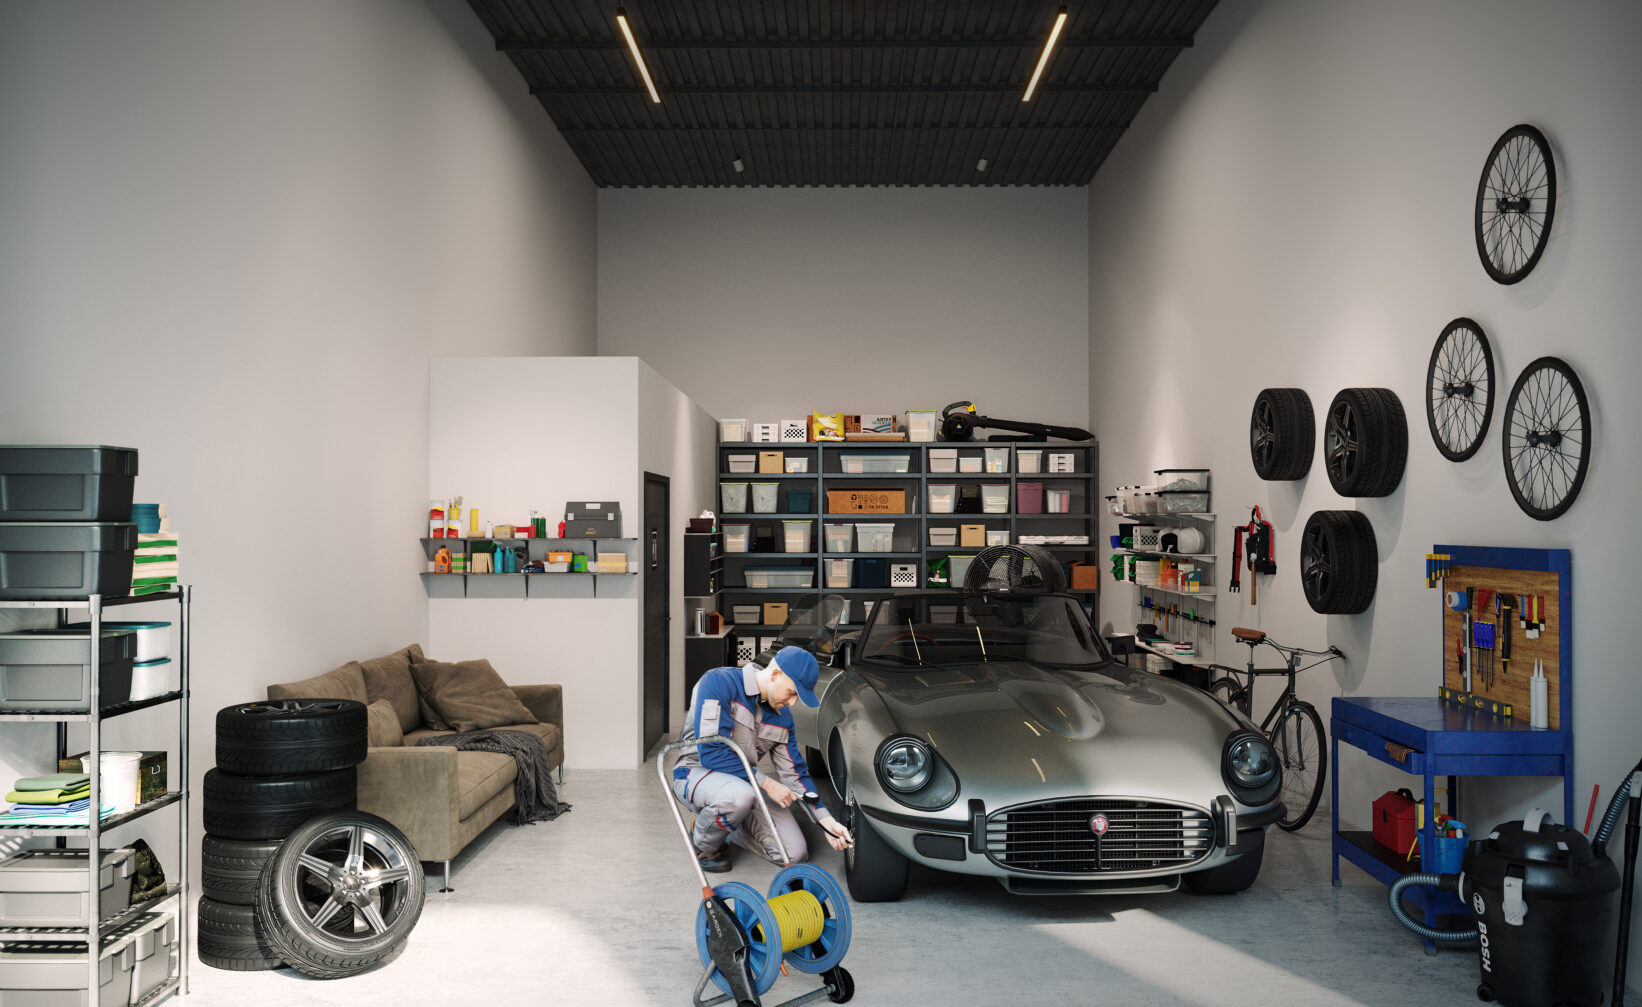 et bilde av en garasje med en bil i.